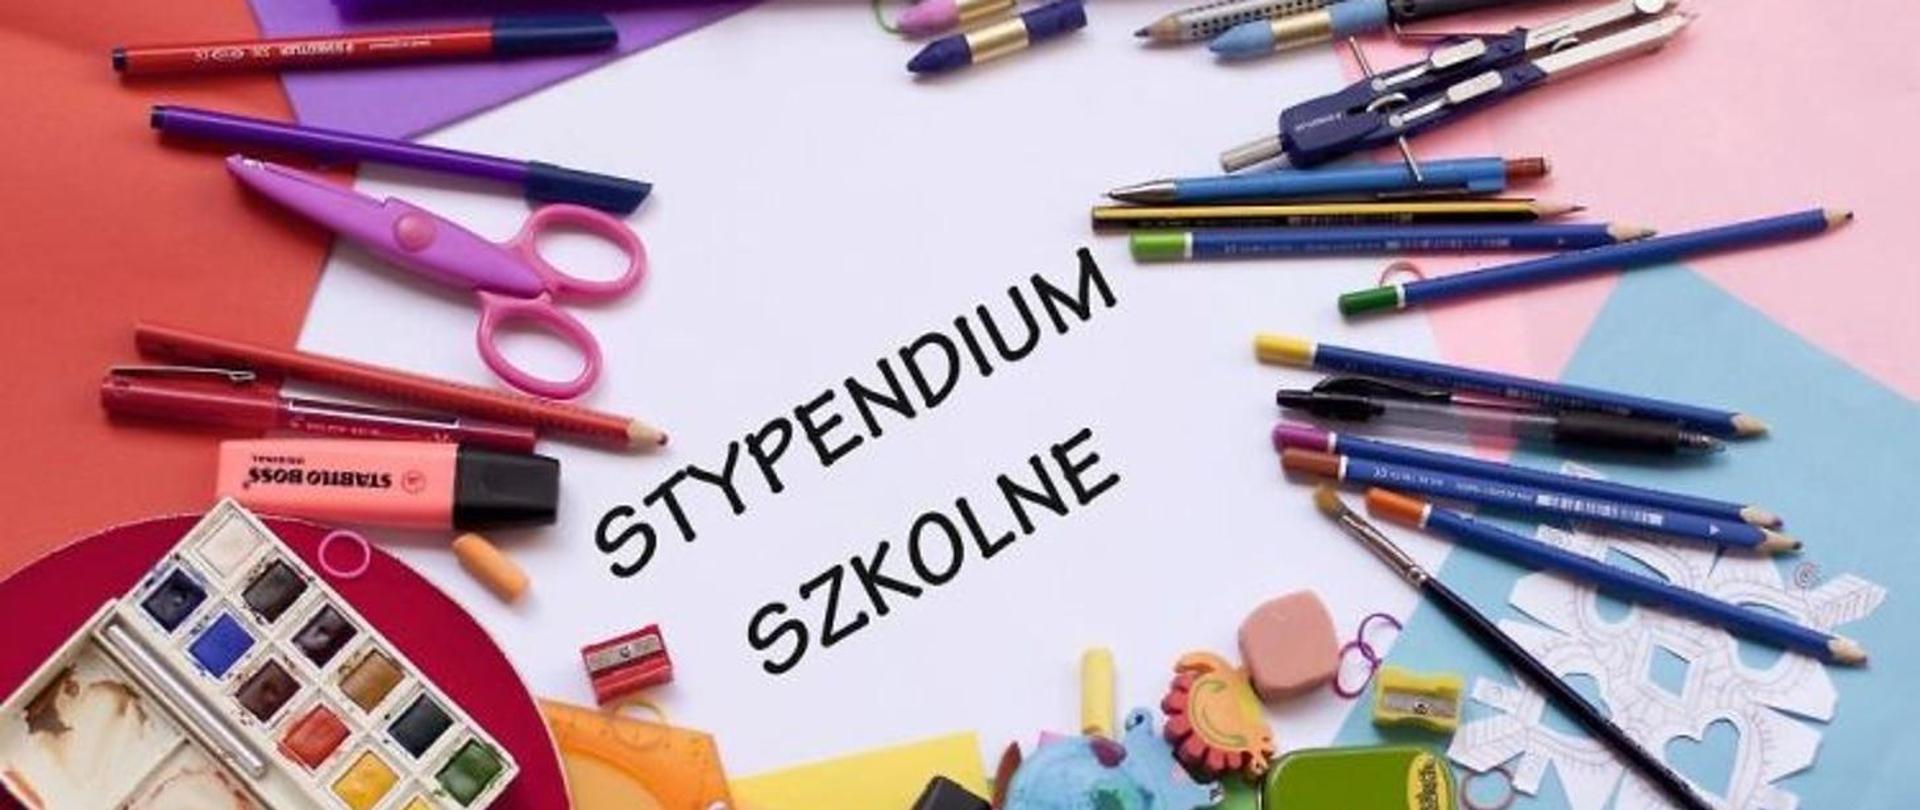 Materiały szkolne (pisaki, ołówki, długopisy itp) ułożone na kolorowych kartkach papieru. Na środku napis stypendium szkolne